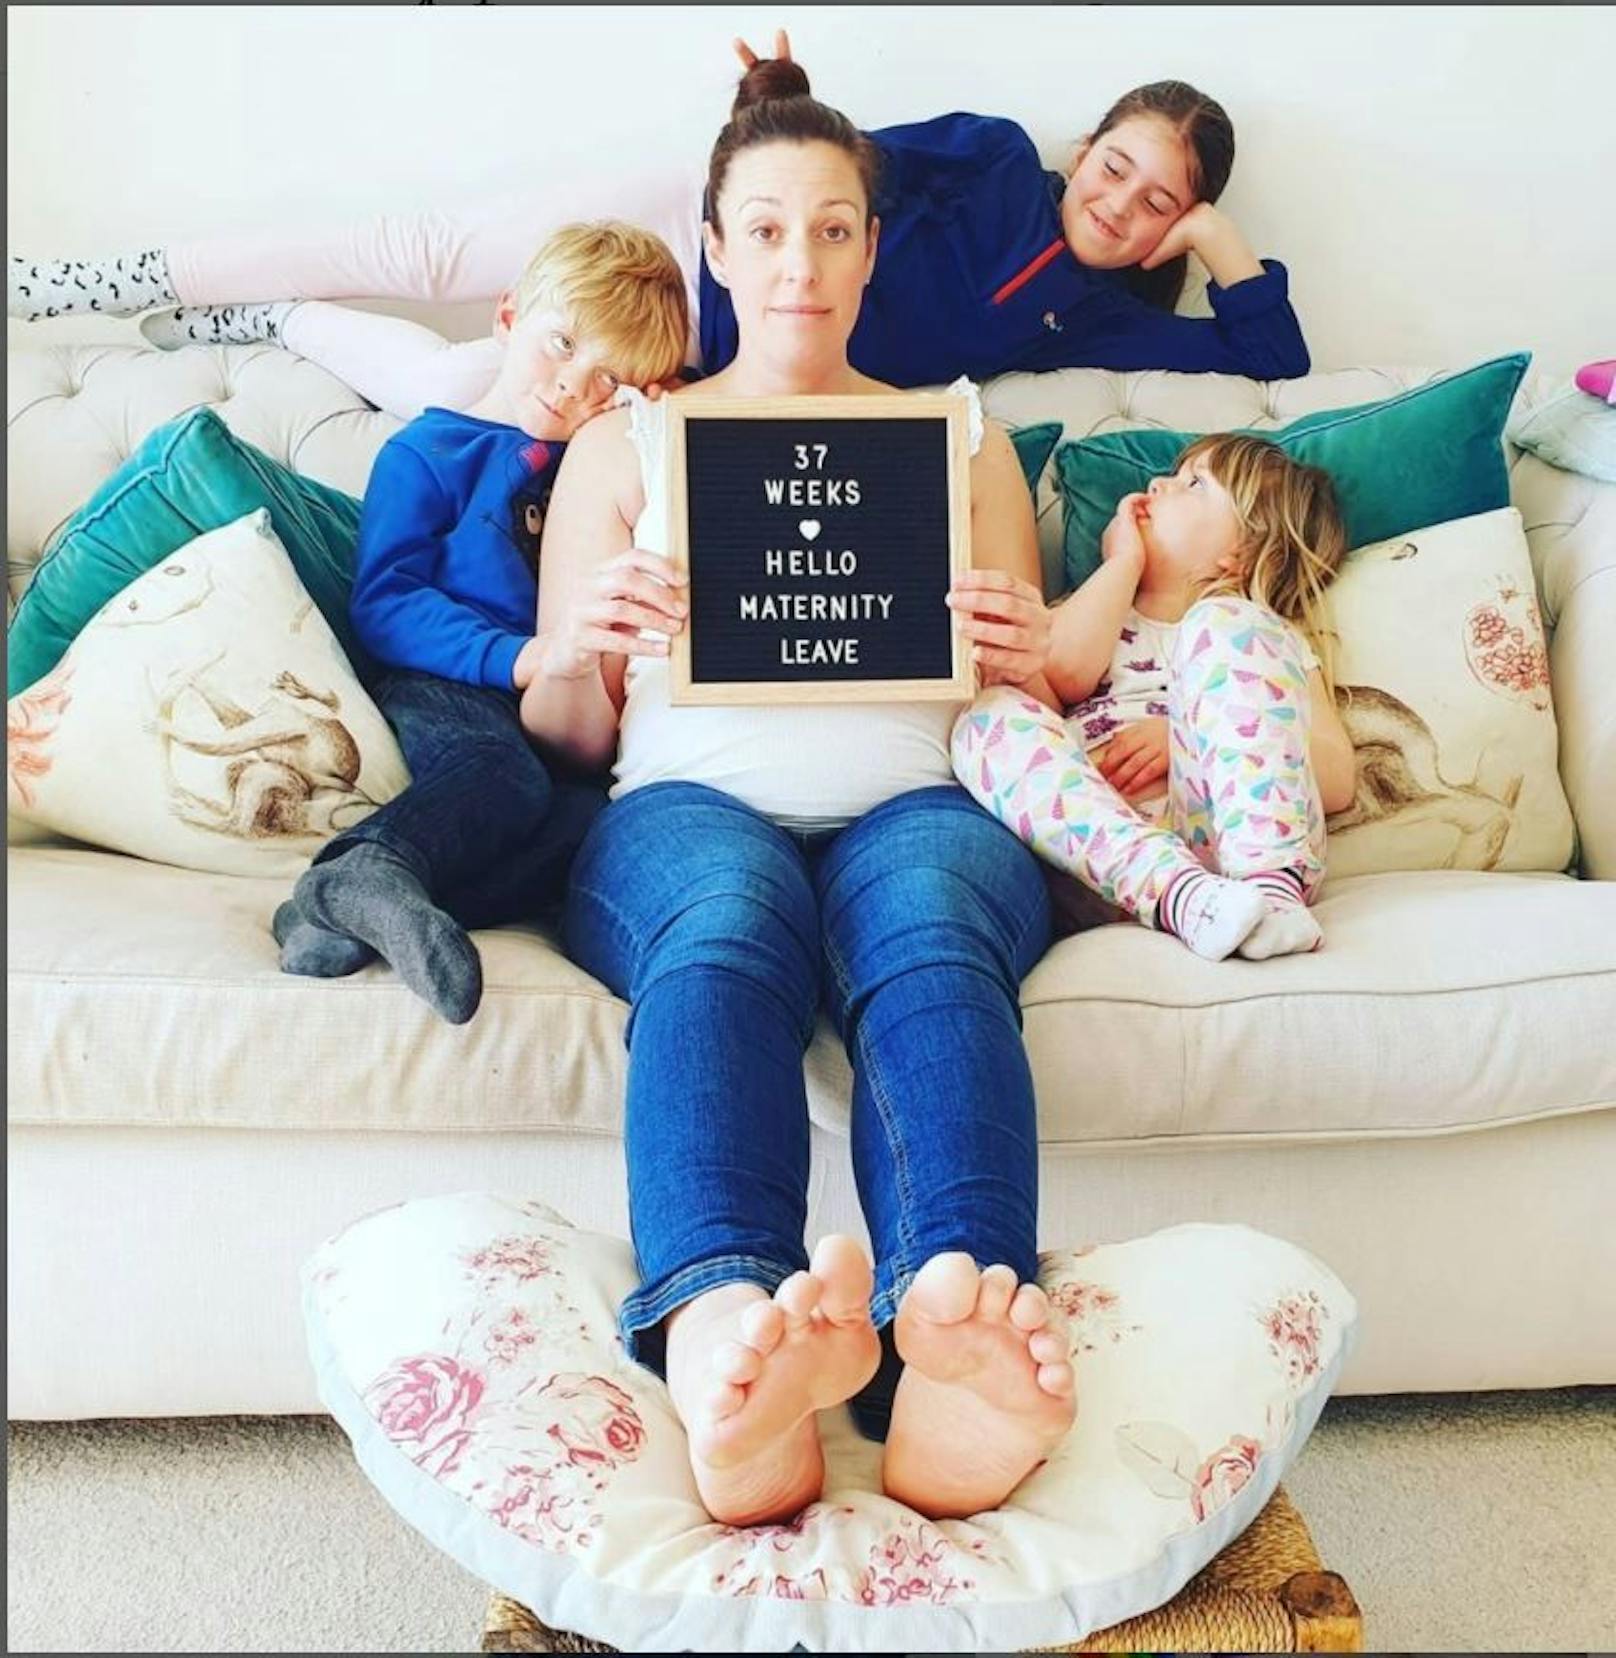 Auf Instagram teilt die Lockdown-Mama Bilder von sich und ihrer Familie.